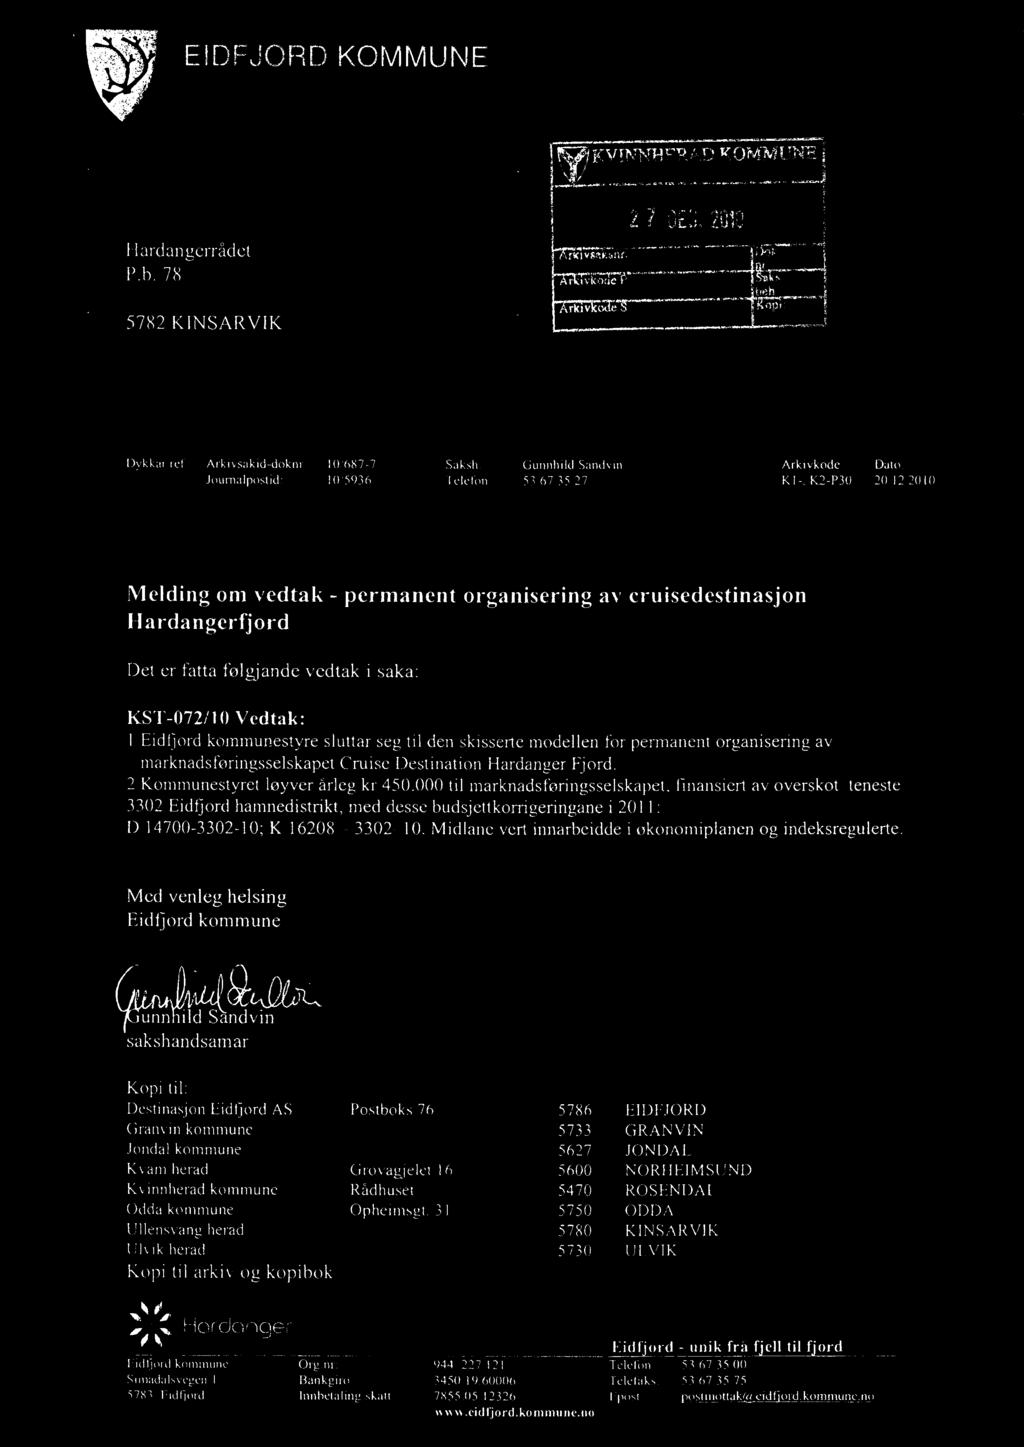 000 til marknadsføringsselskapet, finansiert av overskot teneste 3302 Eidfjord hamnedistrikt, med desse budsjettkorrigeringane i 2011: D 14700-3302-10; K 16208-3302-10.